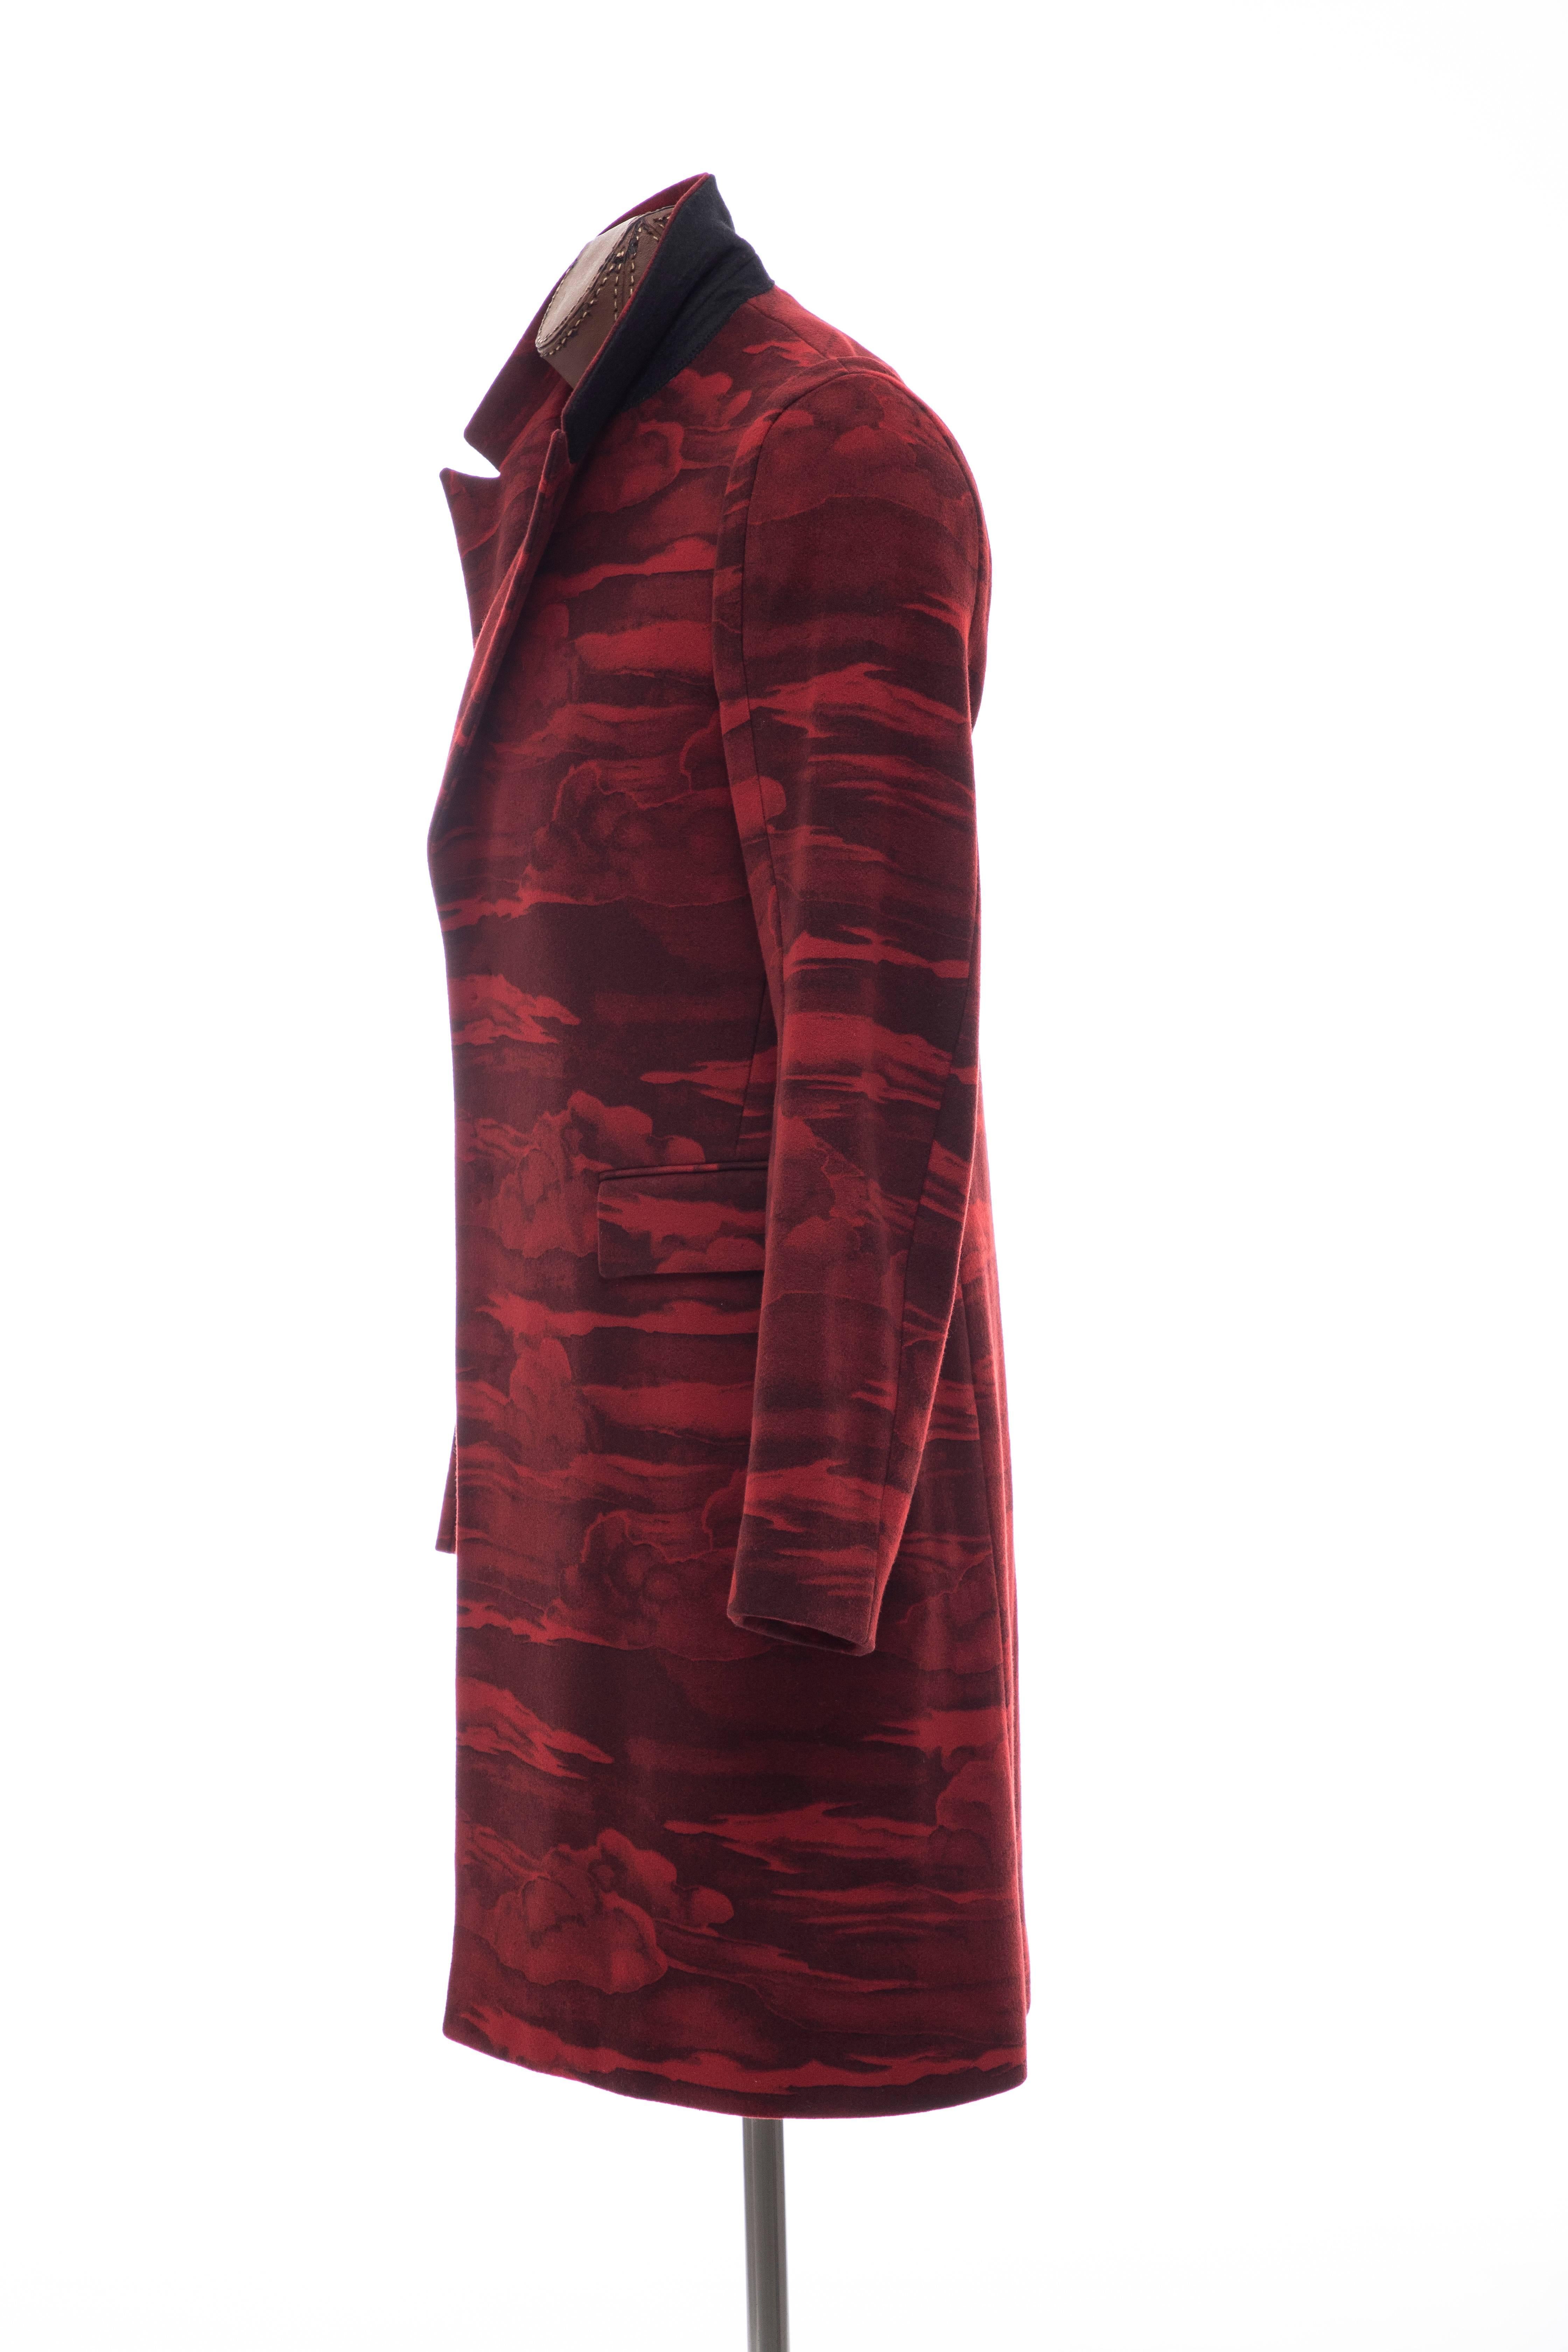 Kenzo Men's Runway Wool Red Cloud Print Coat, Fall 2013 4